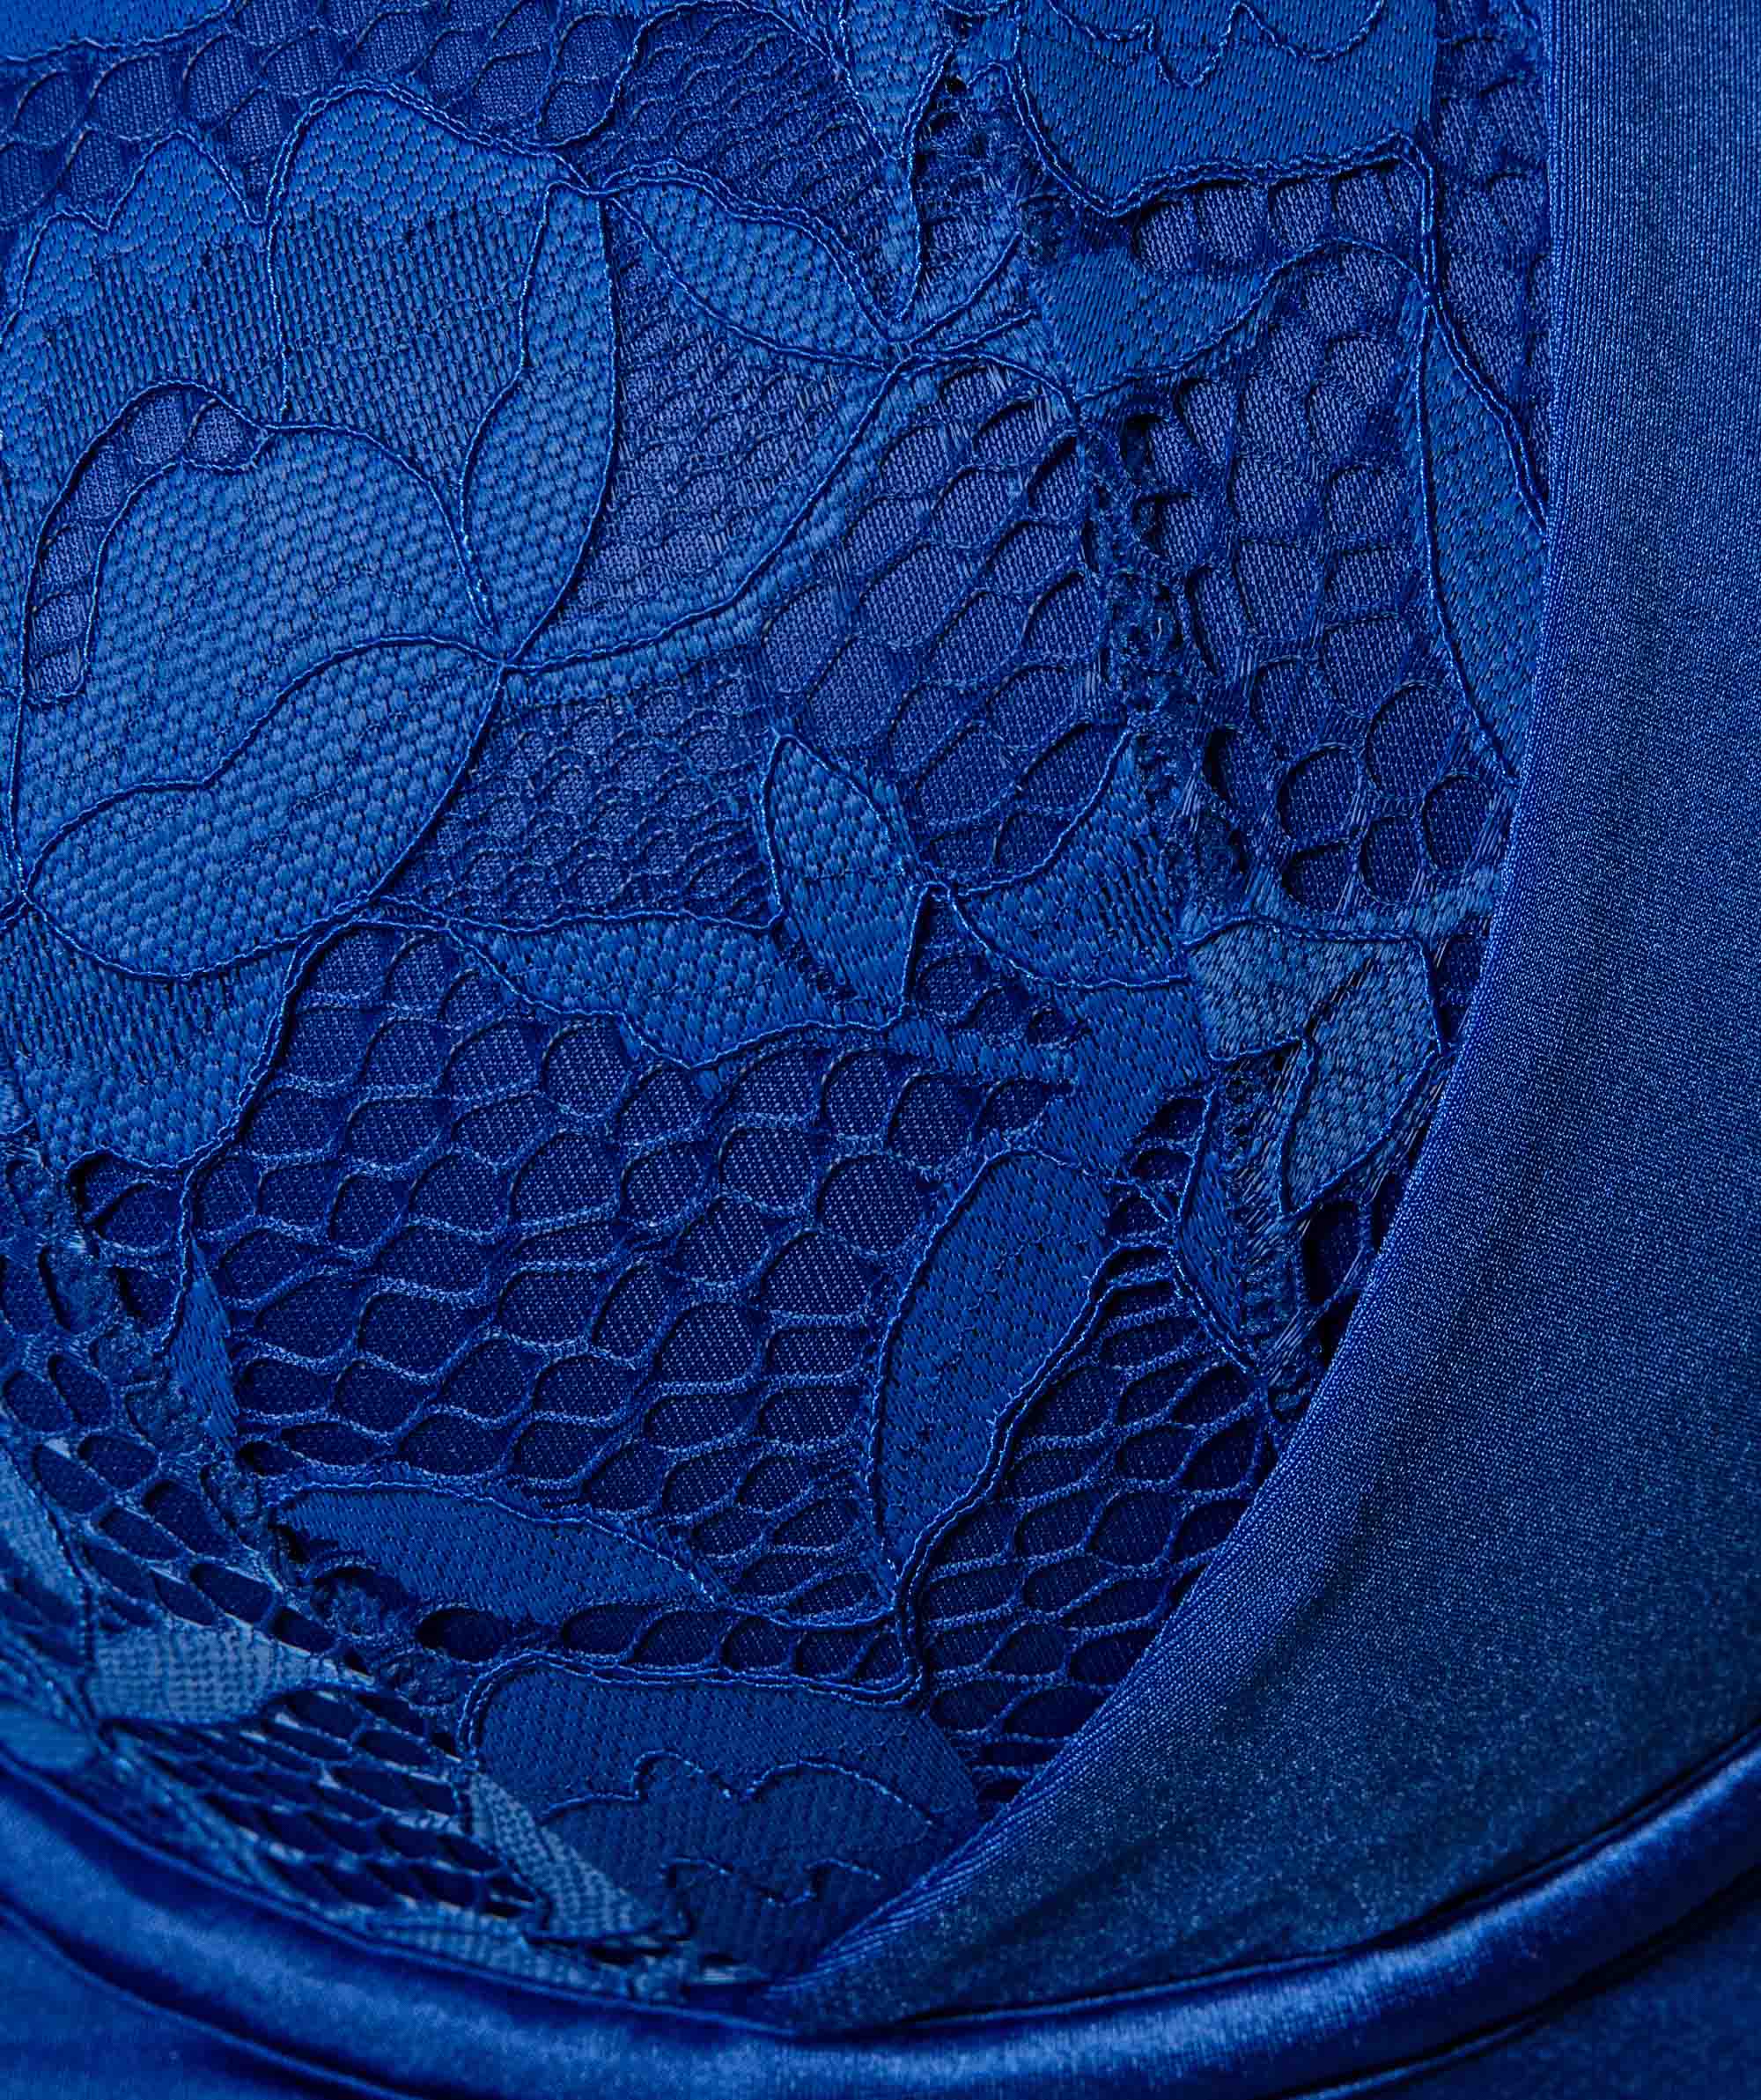 Charmenie Balconette Full Cup Bra - Cobalt Blue